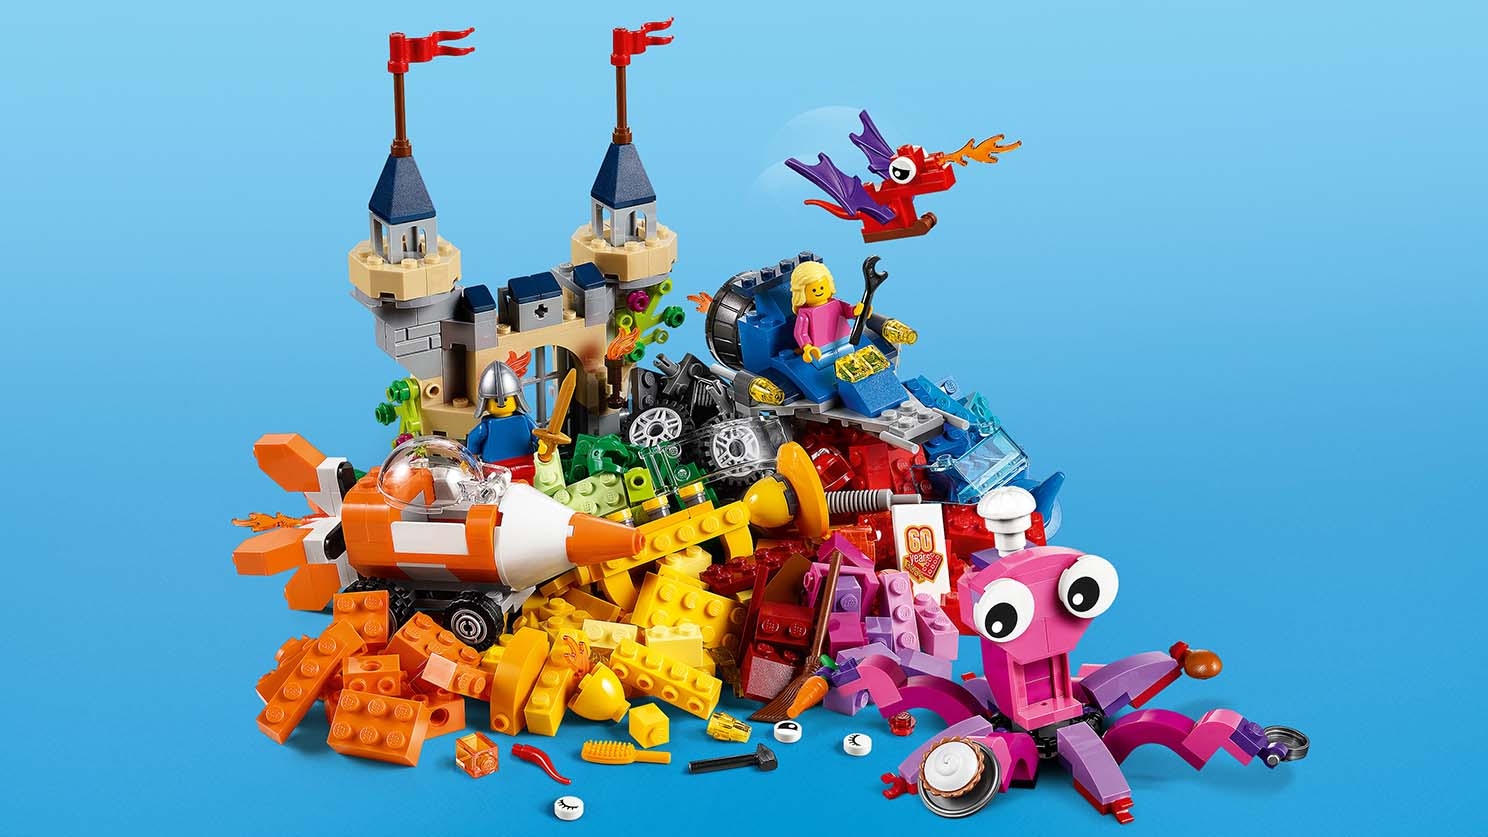 Ocean's Bottom 10404 - LEGOÂ® Classic Sets - LEGO.com for kids